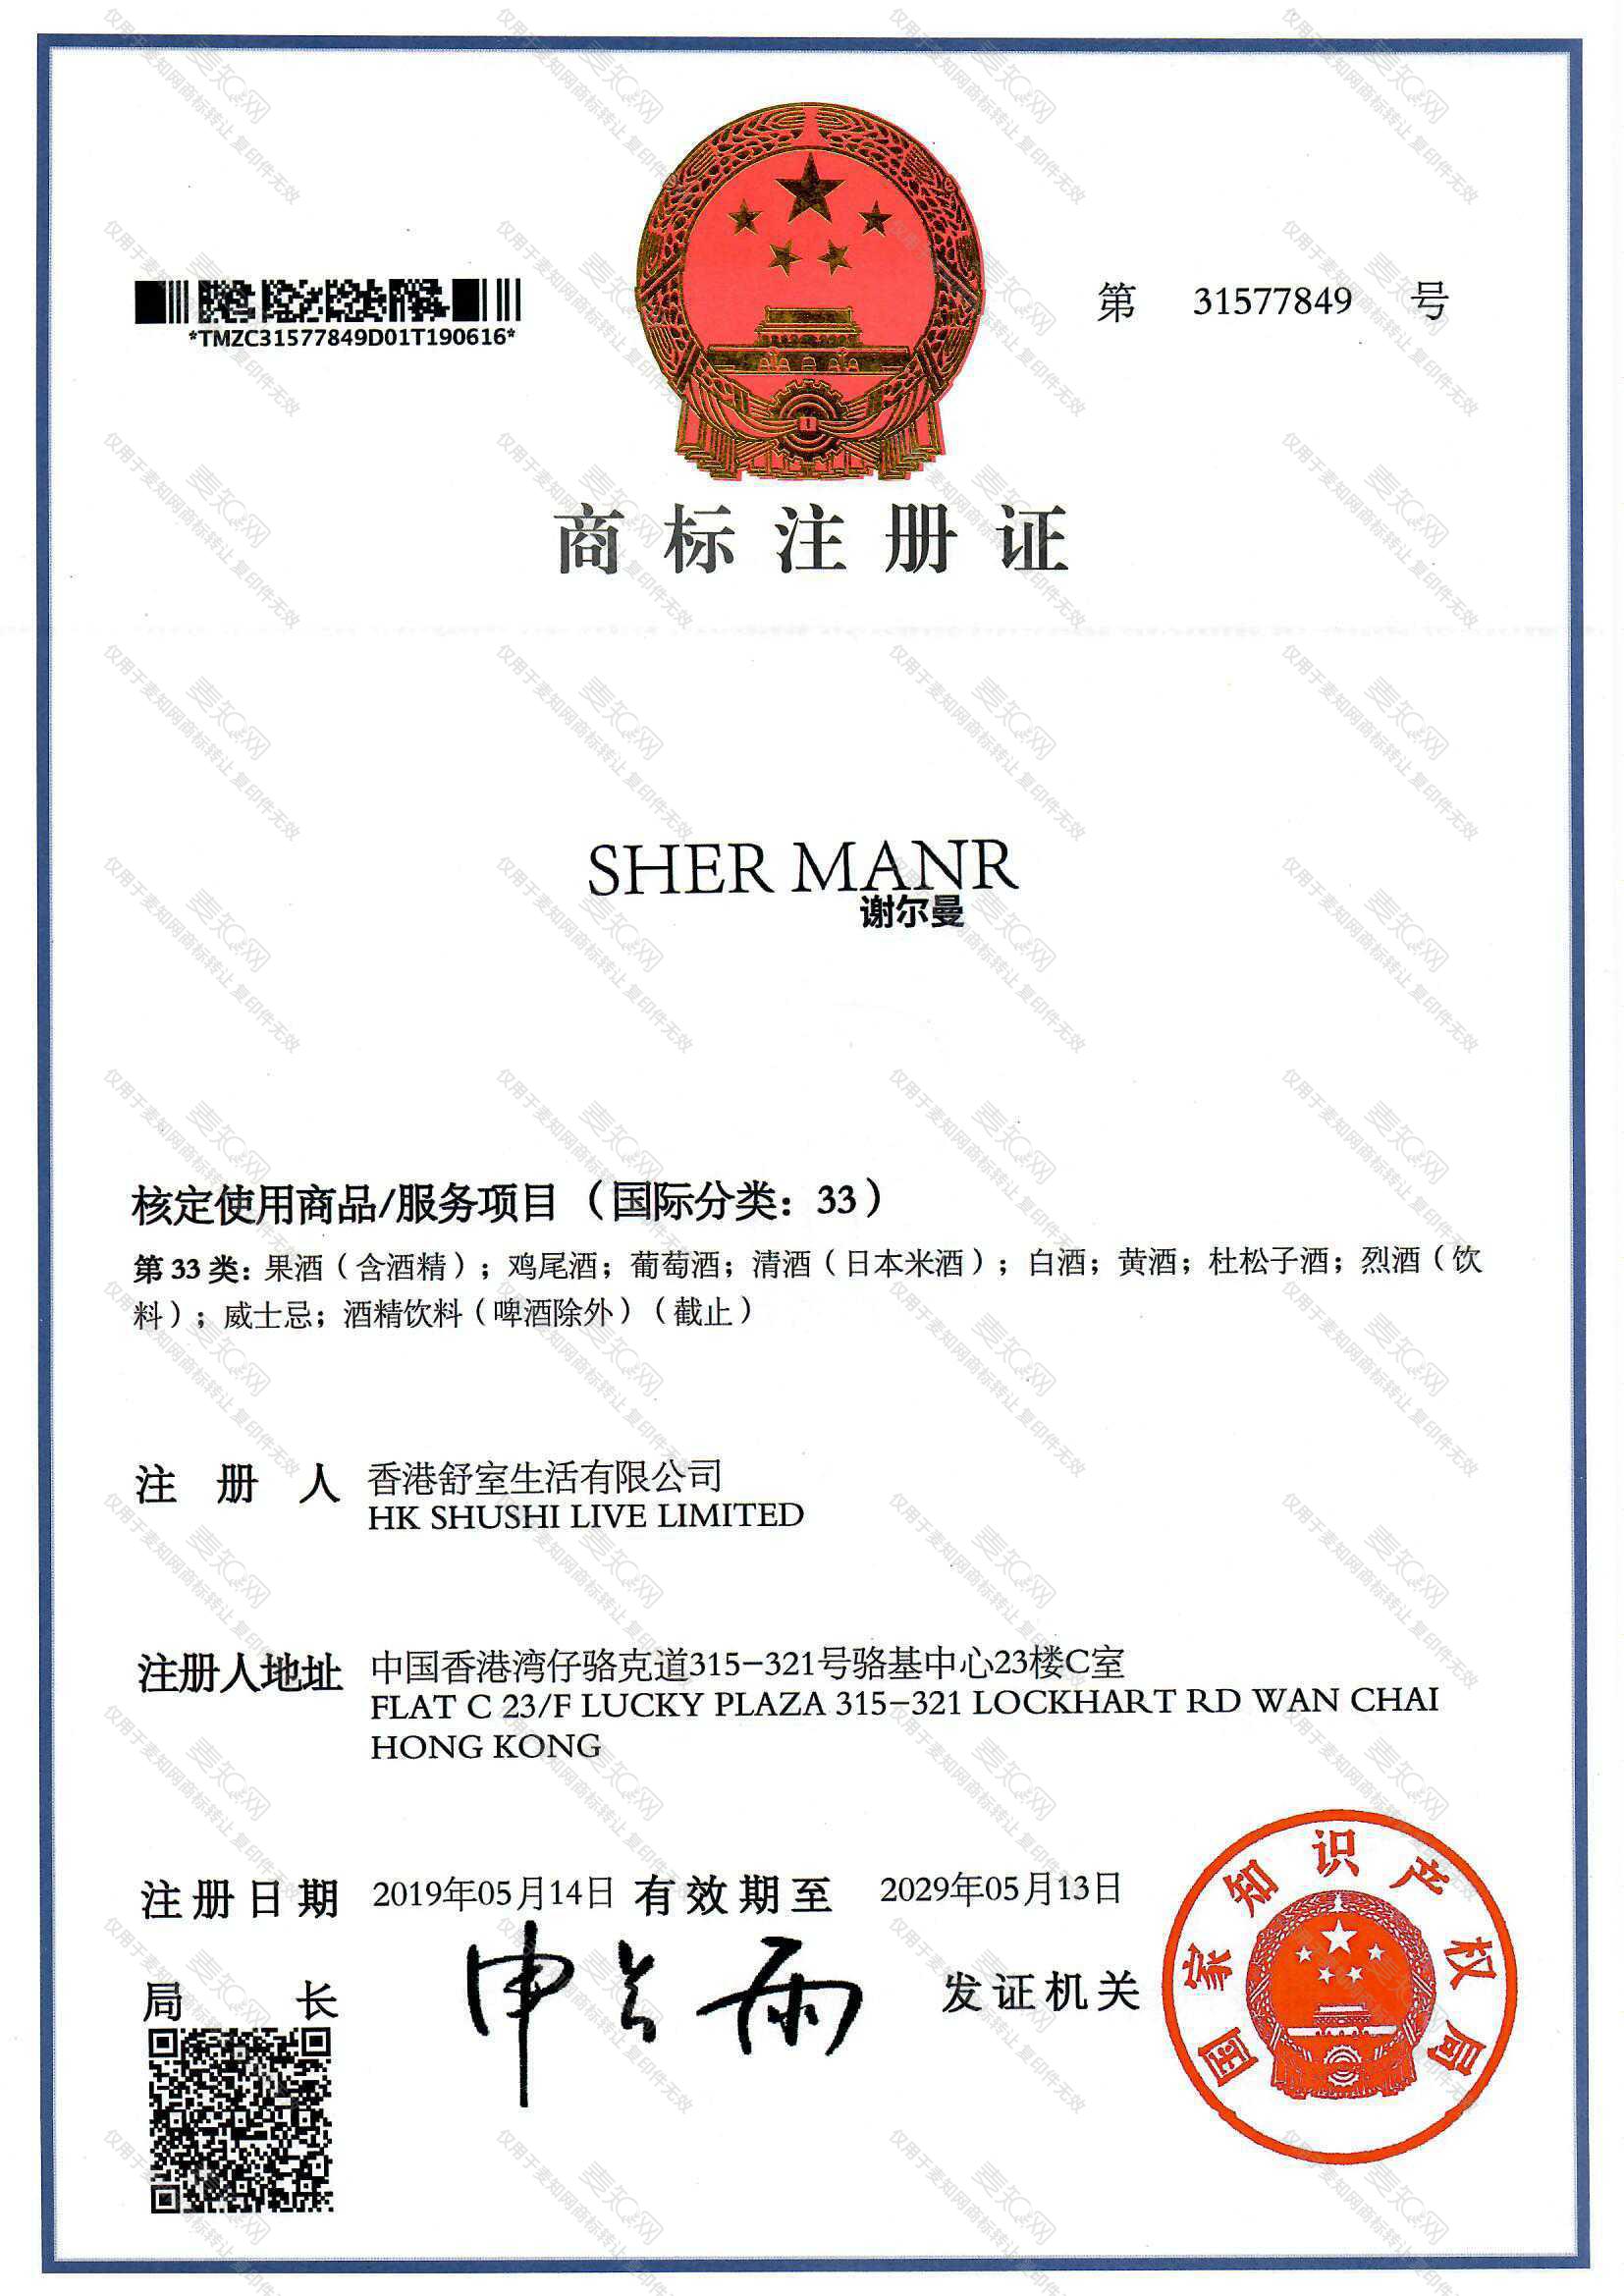 谢尔曼 SHER MANR注册证